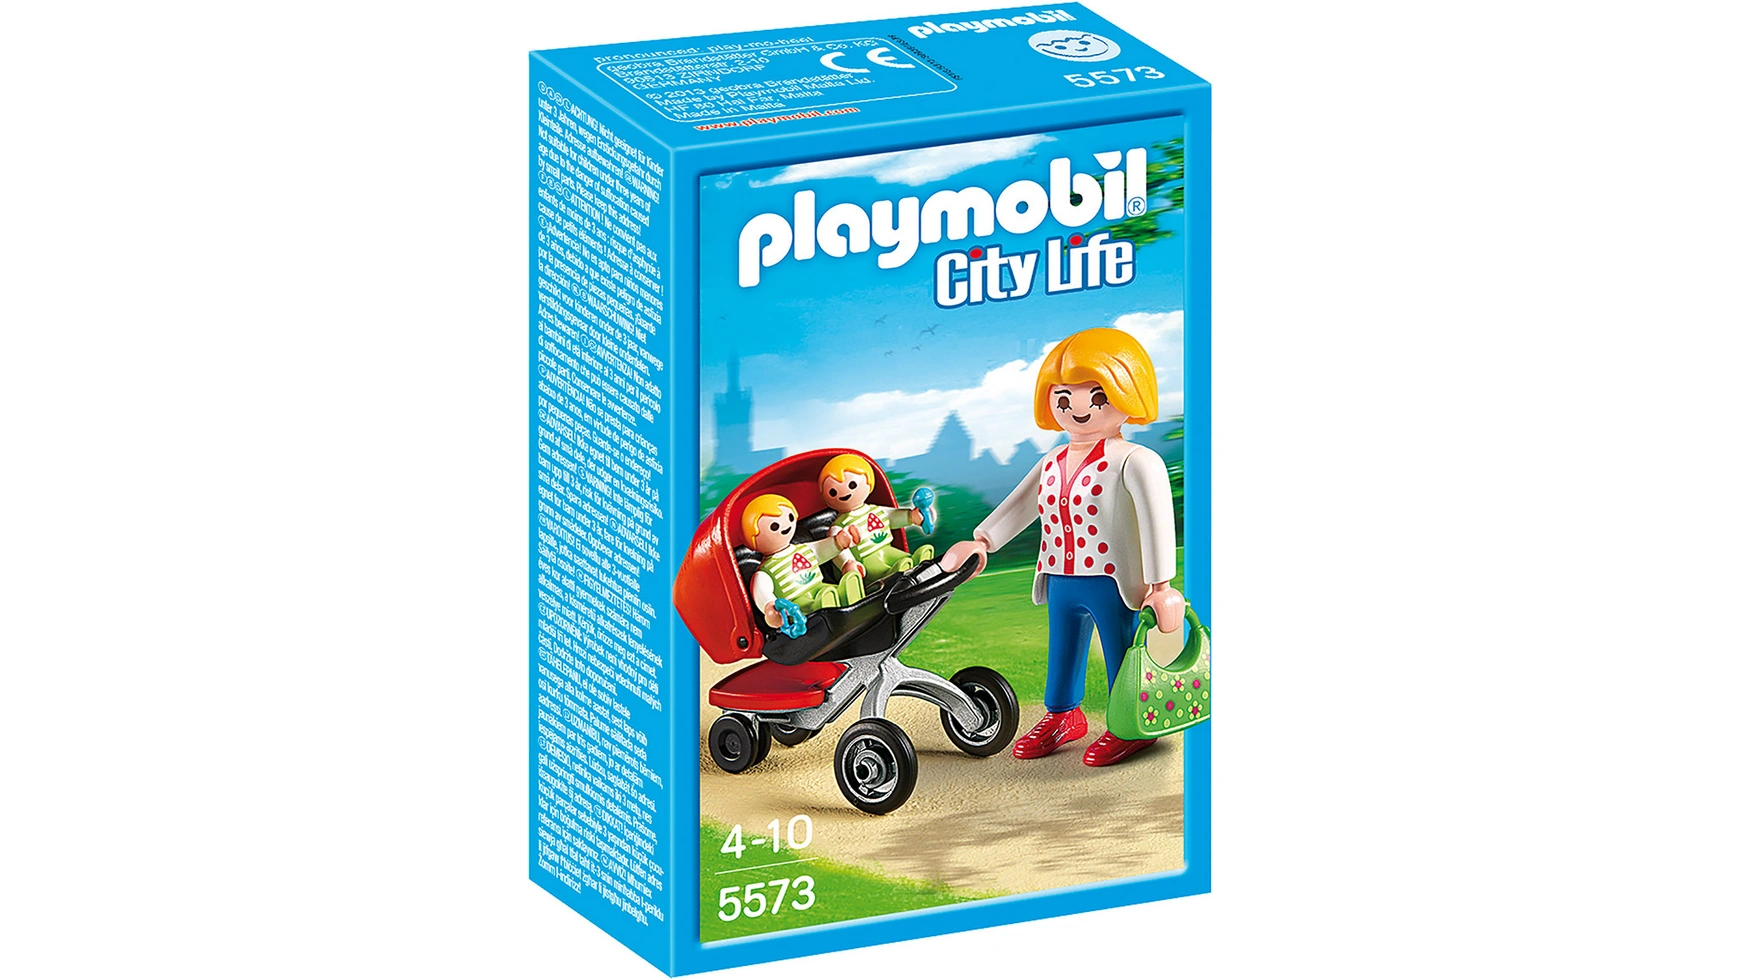 цена City life в детском саду: коляска для близнецов Playmobil